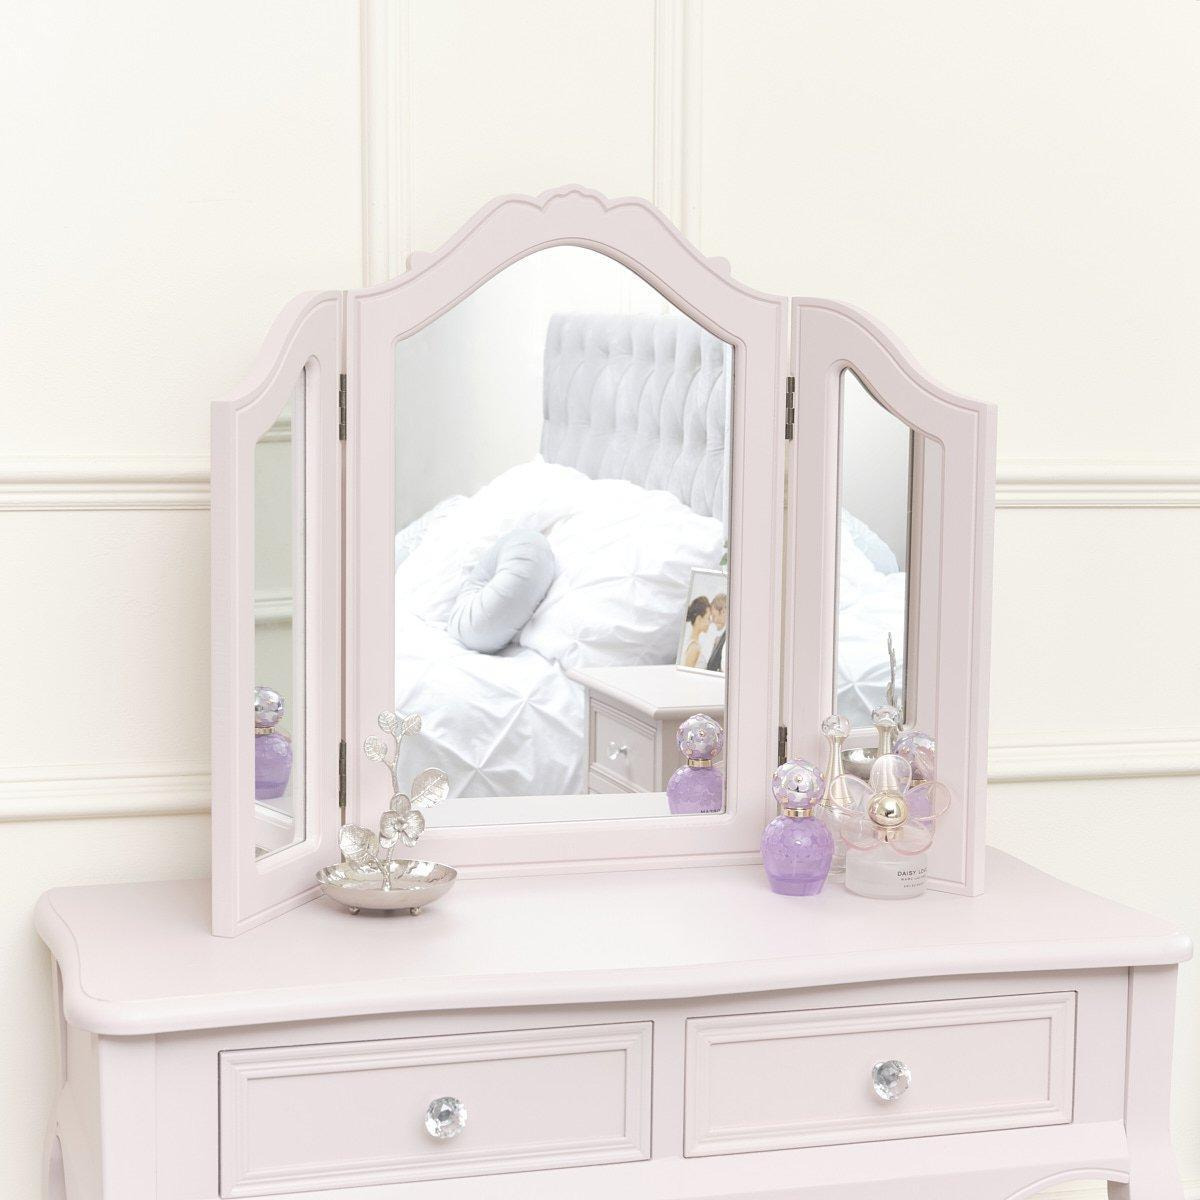 Pink Tabletop Triple Vanity Mirror - Victoria Pink Range - image 1